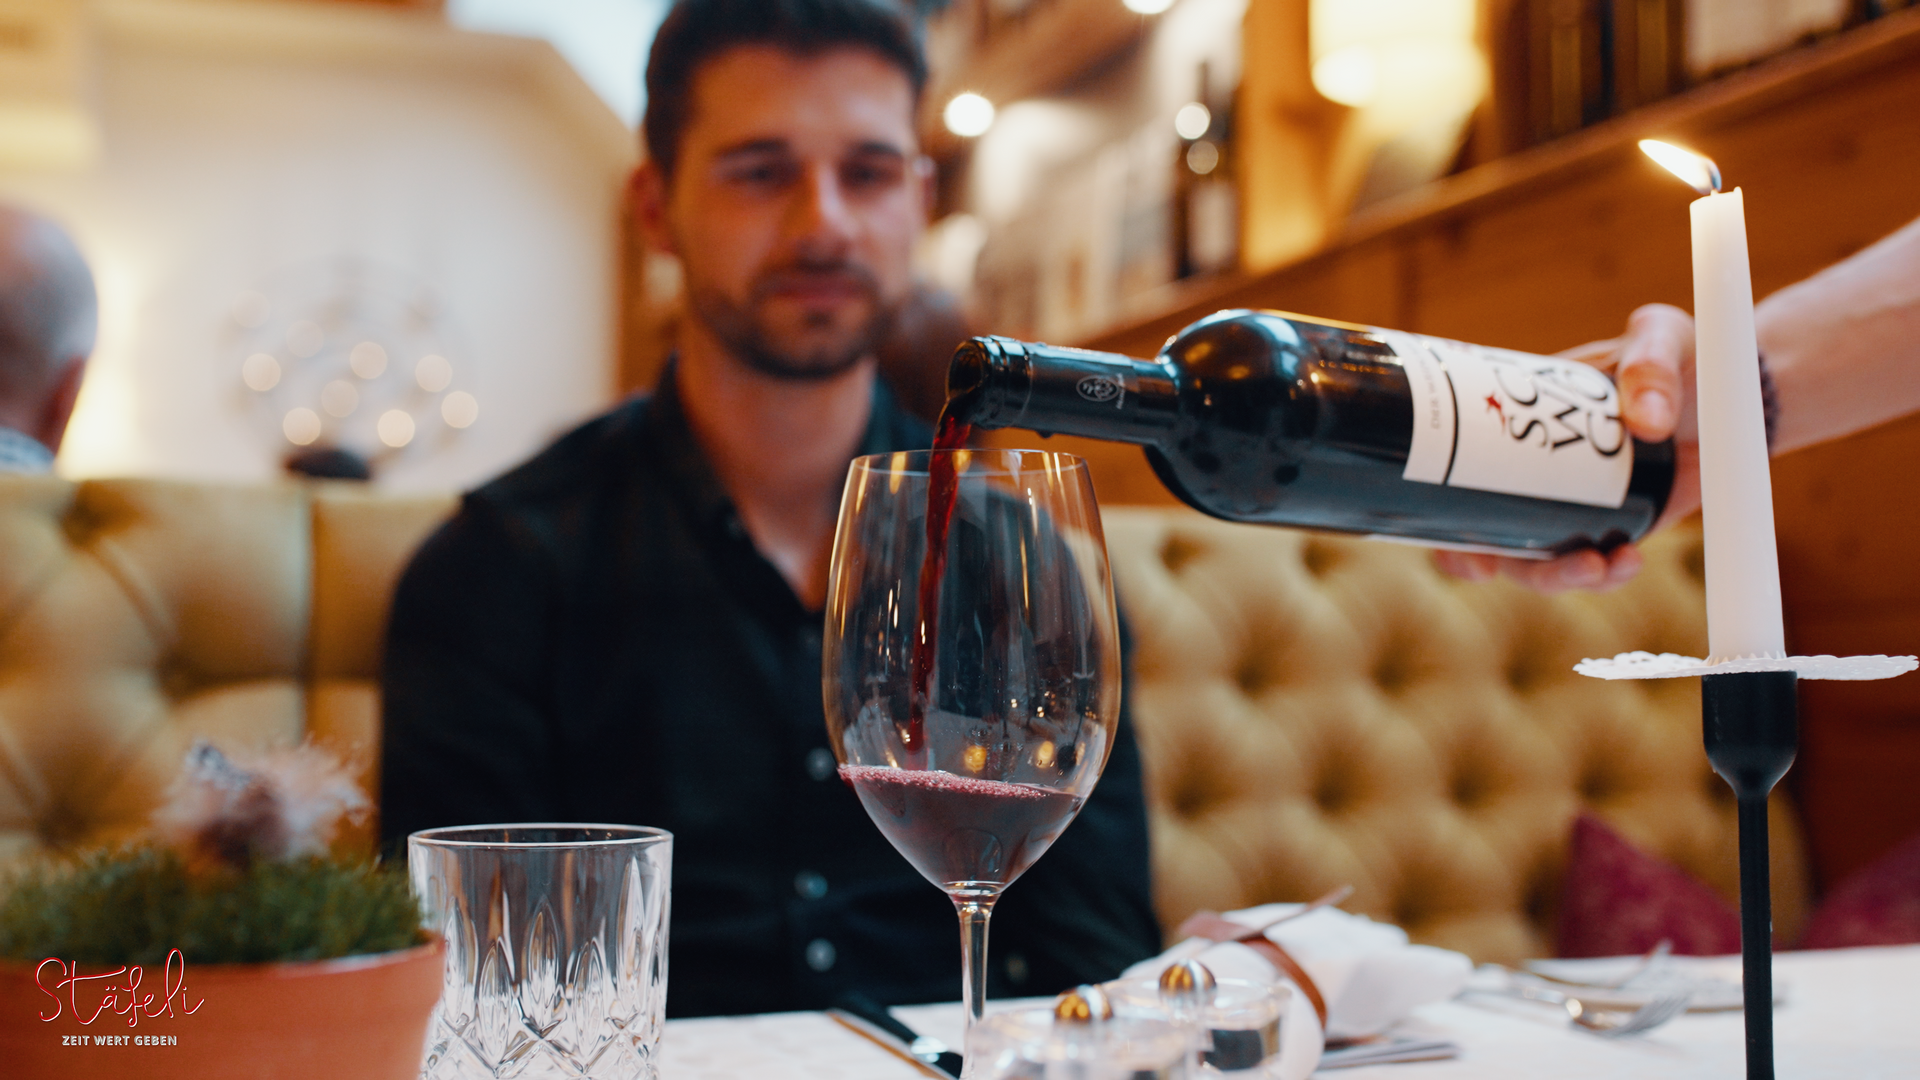 Ein Mann sitzt an einem Tisch und es wird Wein aus einer Flasche eingeschenkt.